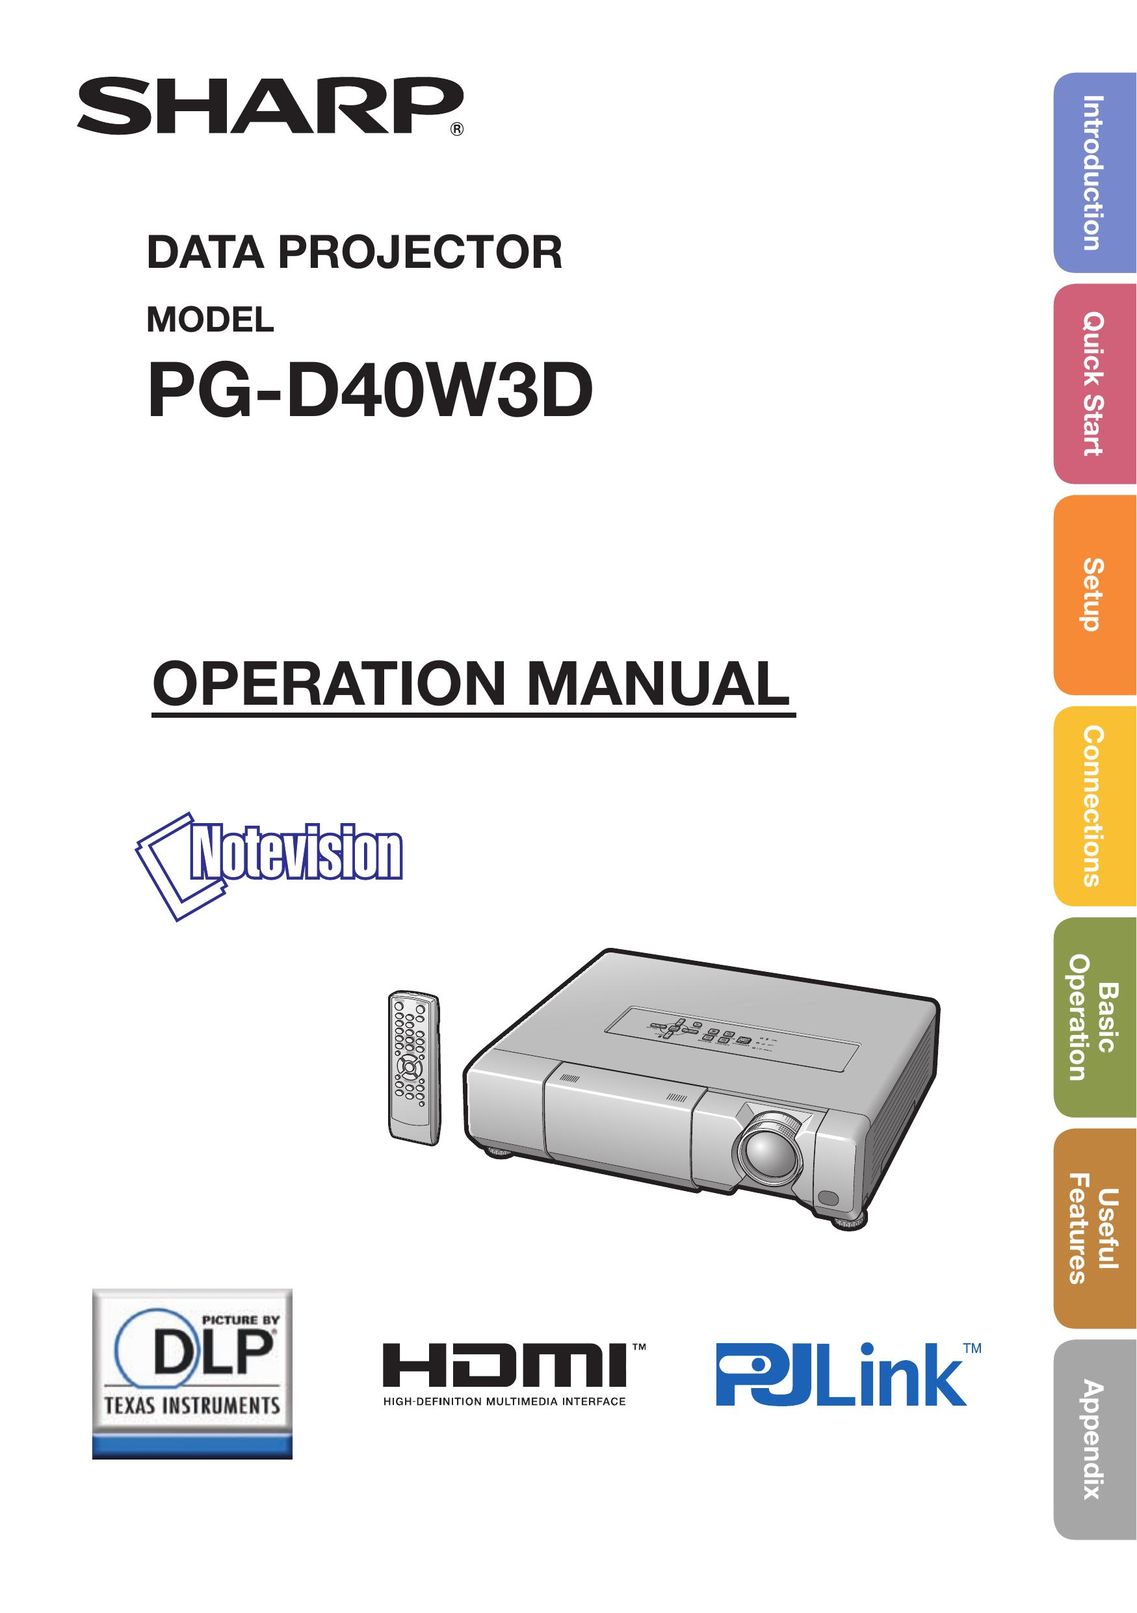 Sharp PG-D40W3D Projector User Manual